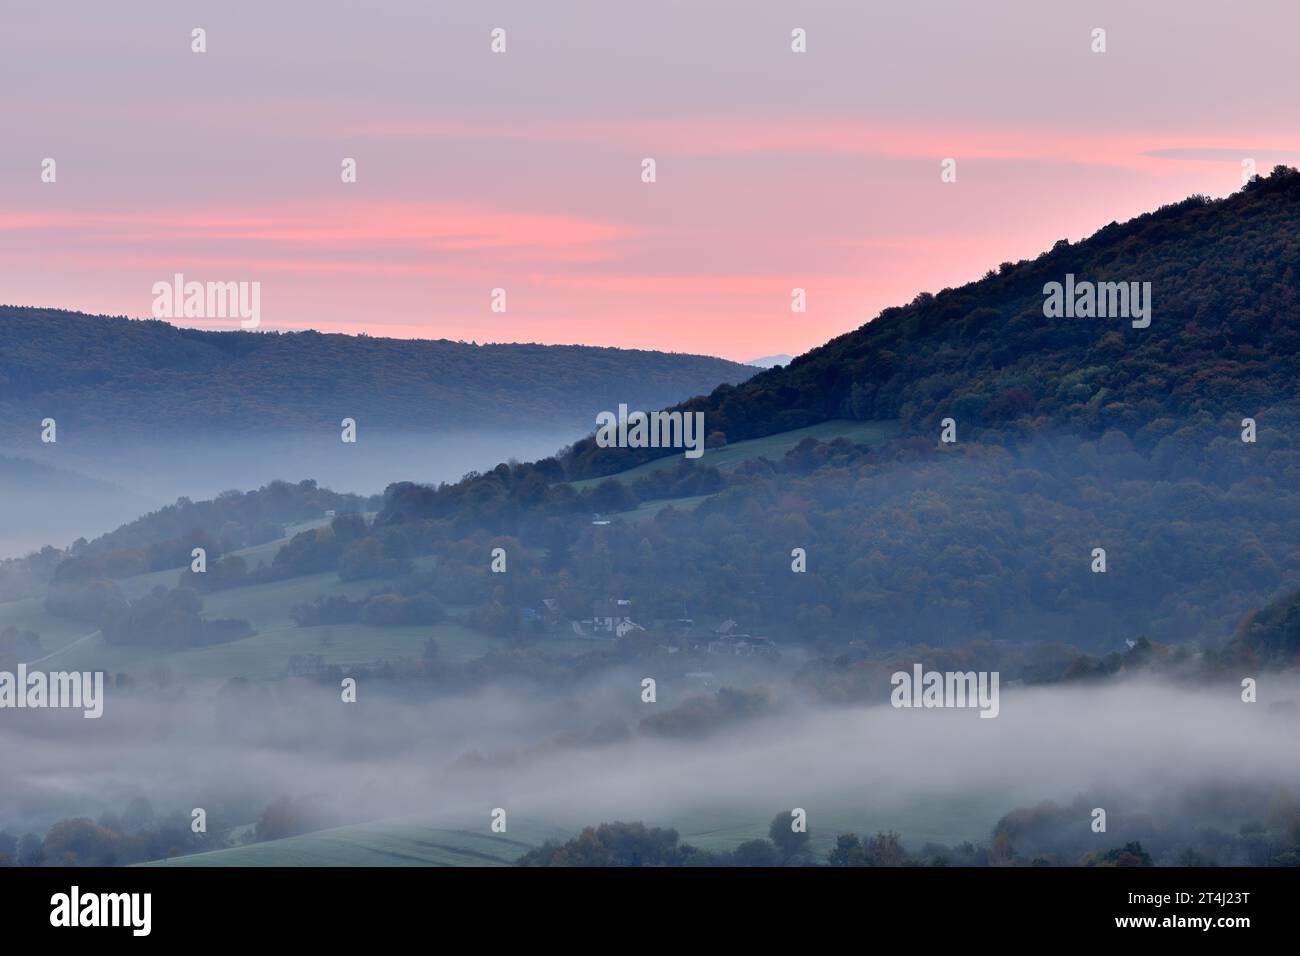 Herbst ländliche Nebellandschaft mit Wald bei Sonnenaufgang. Schöner rosa bewölkter Himmel. Blick auf das Tal von oben. Horna Suca, Slowakei Stockfoto